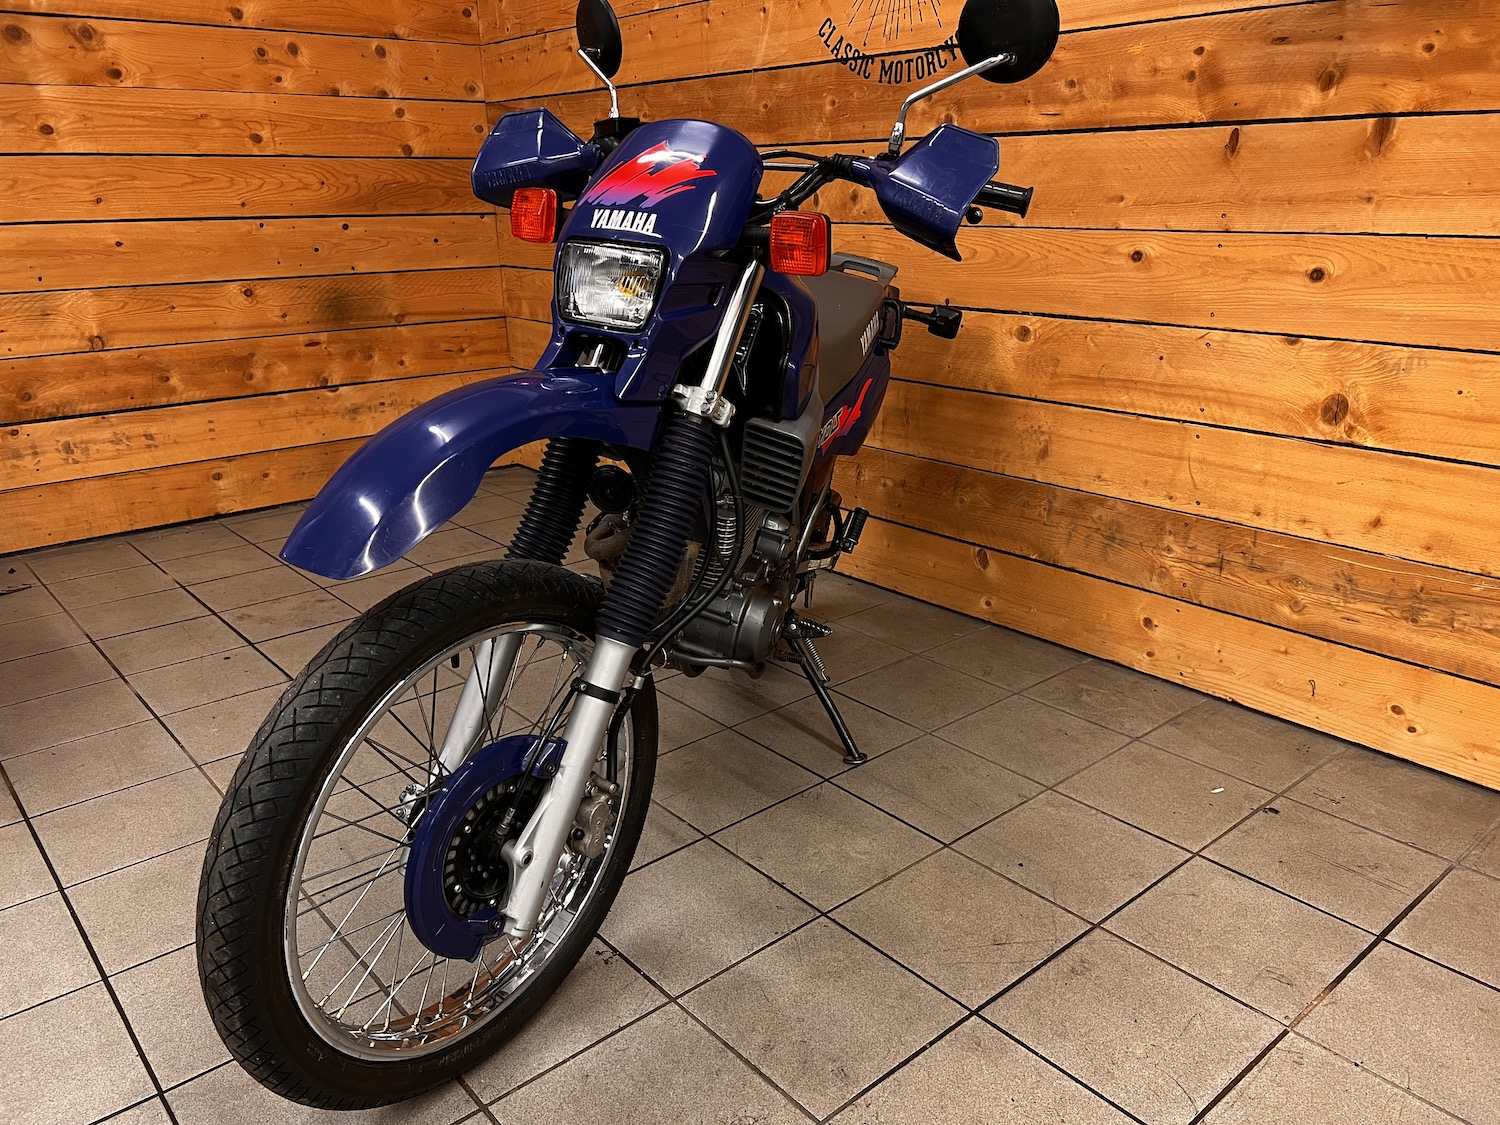 Yamaha_xt600e_Cezanne_classic_motorcycle_4-154.jpg